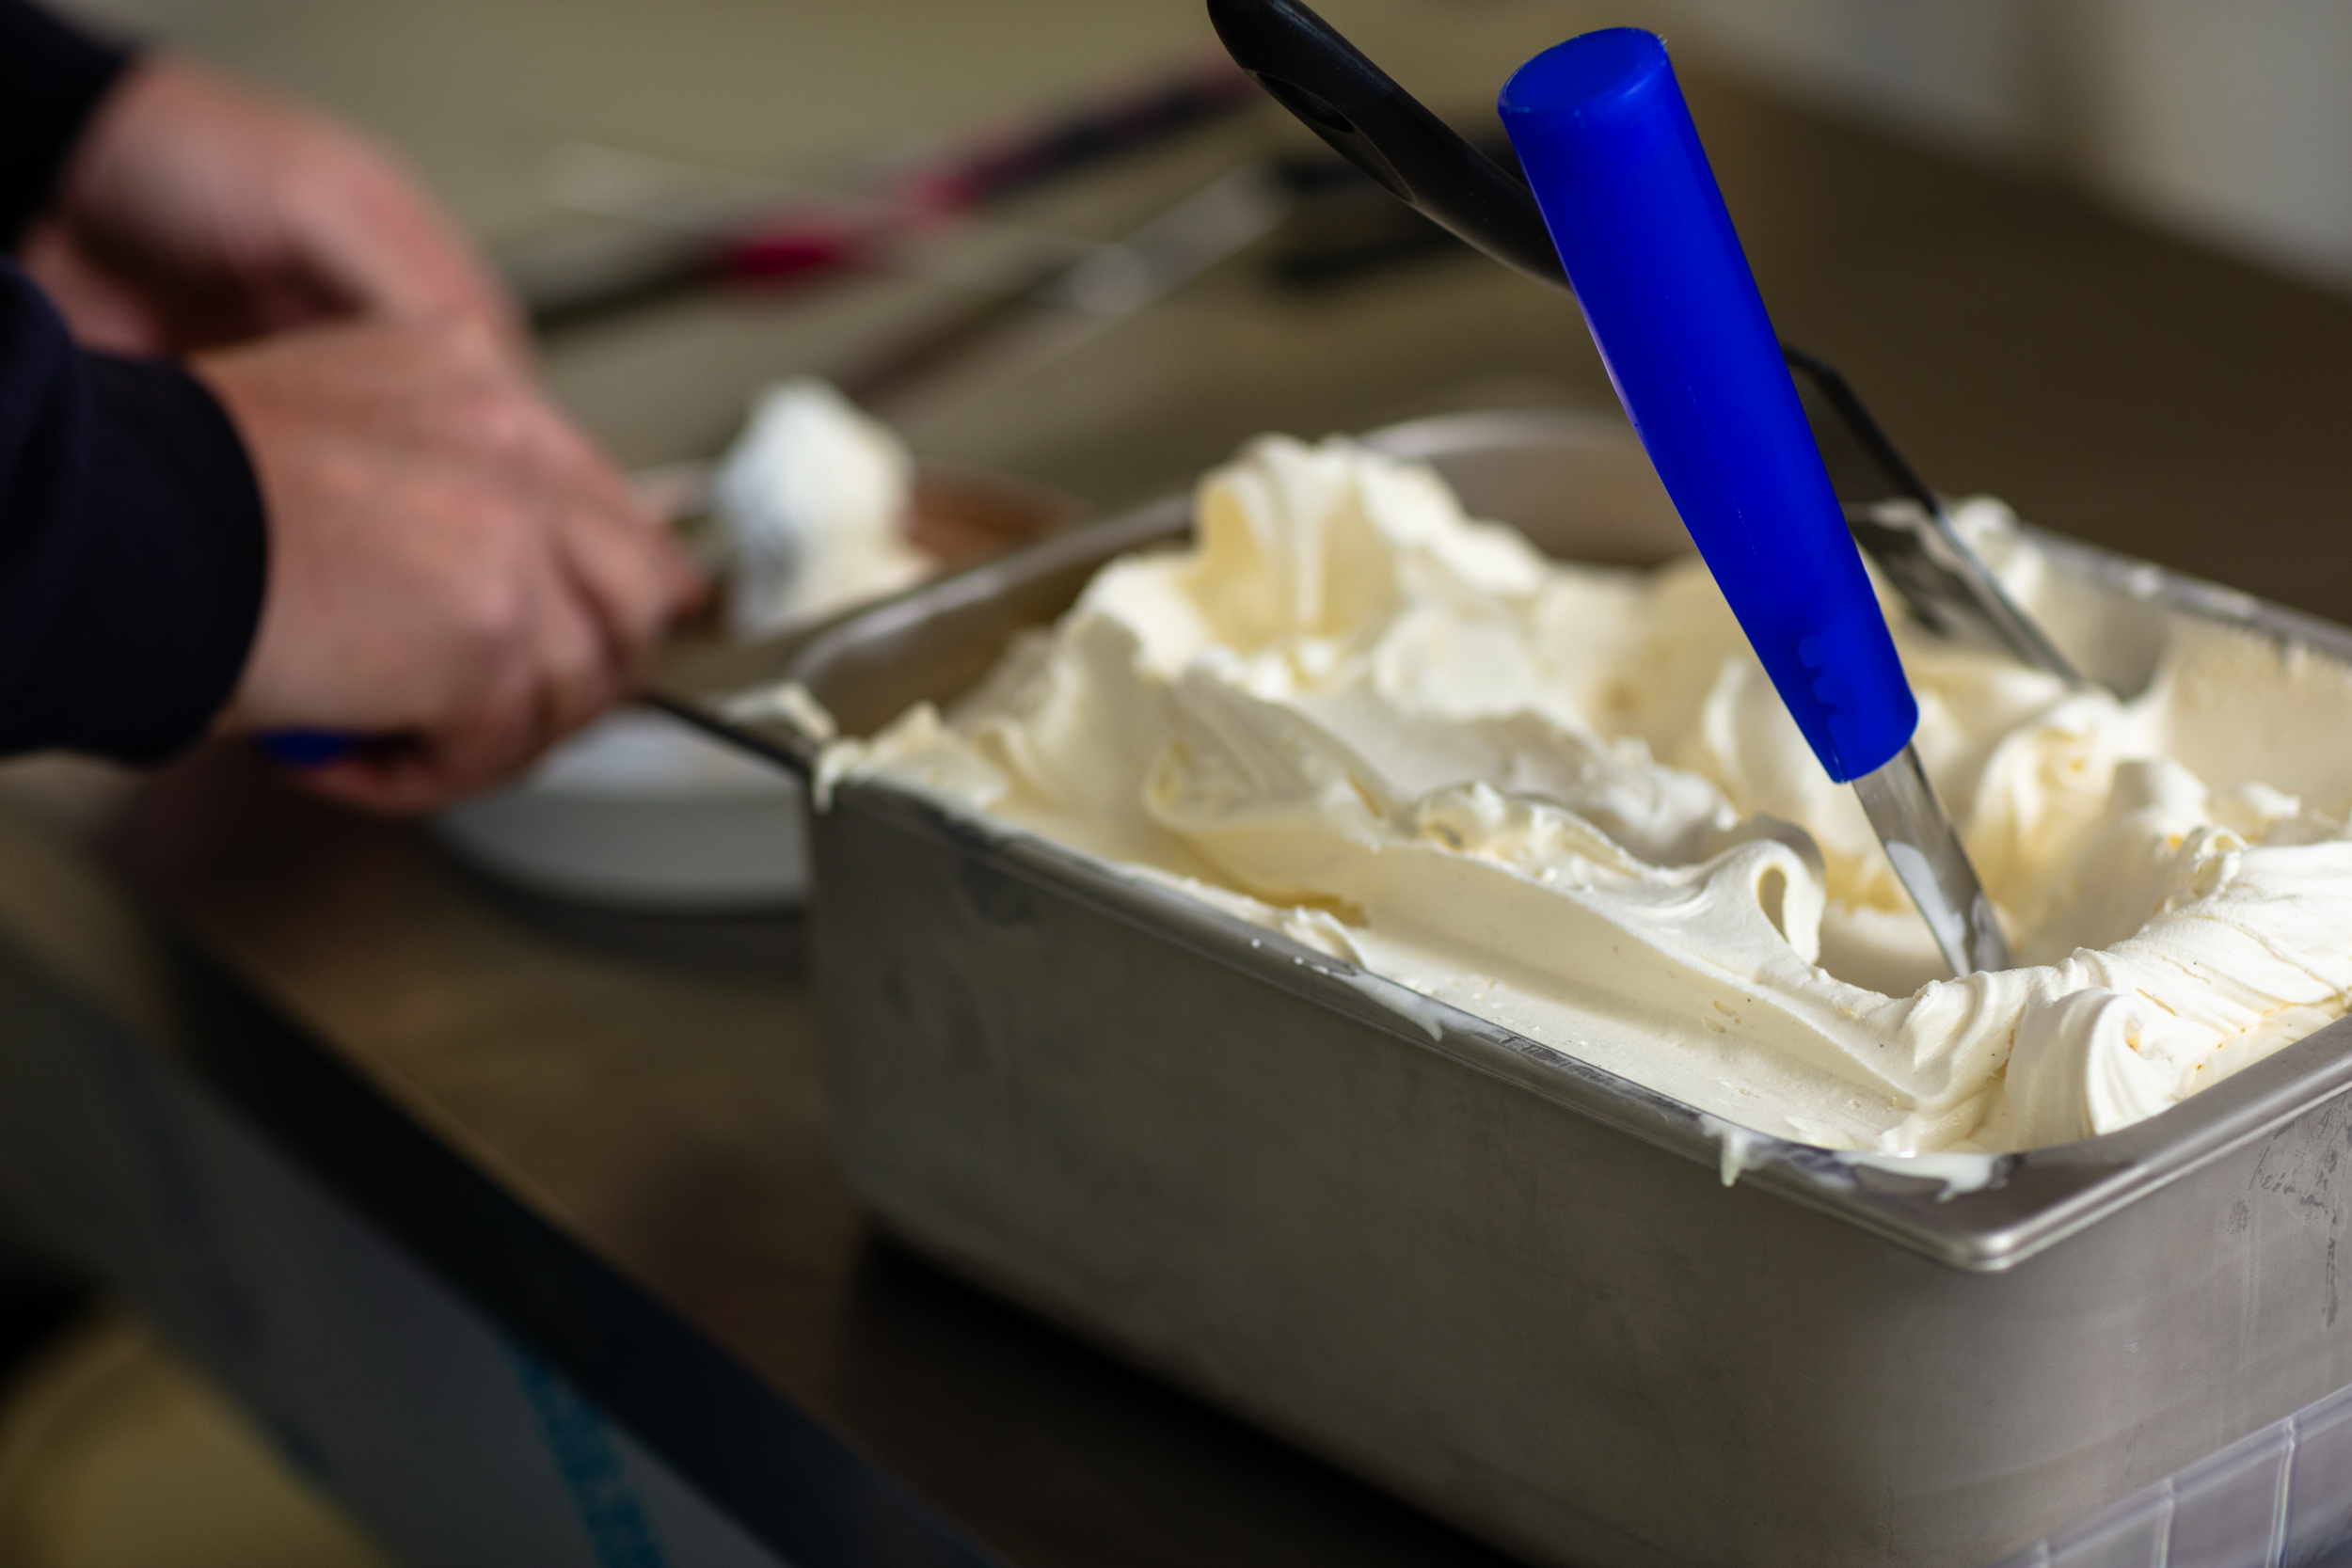 Icecream cake preparation Fijnzoet 2021-7464